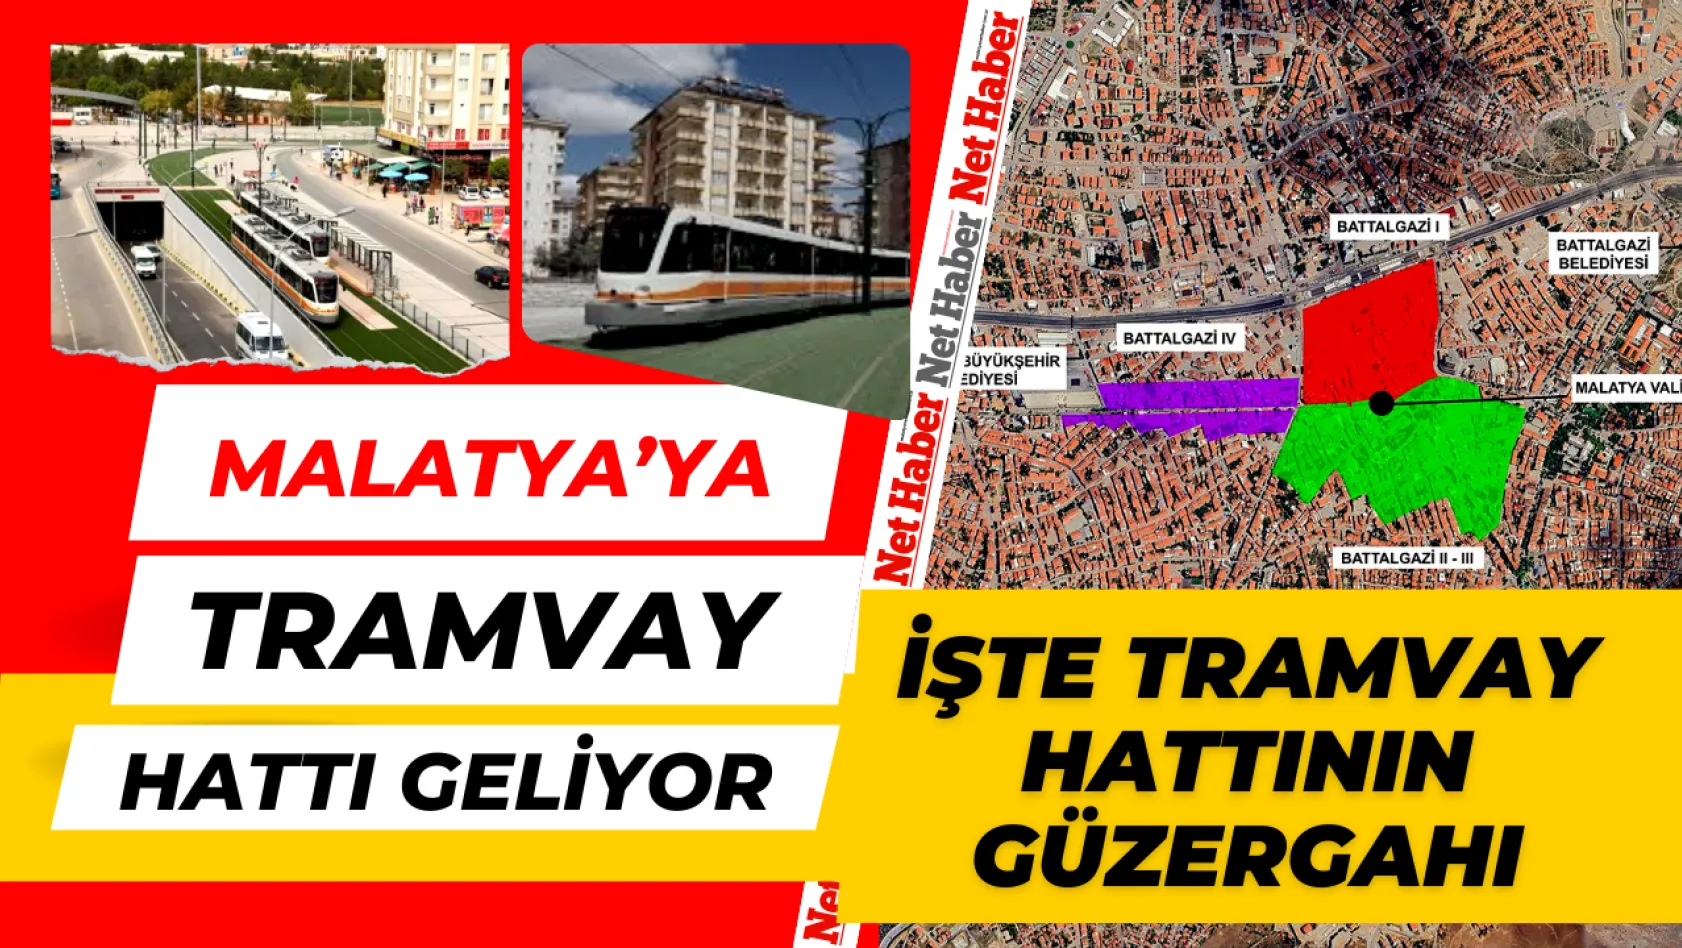 Malatya'ya tramvay hattı geliyor! İşte tramvay hattının güzergahı